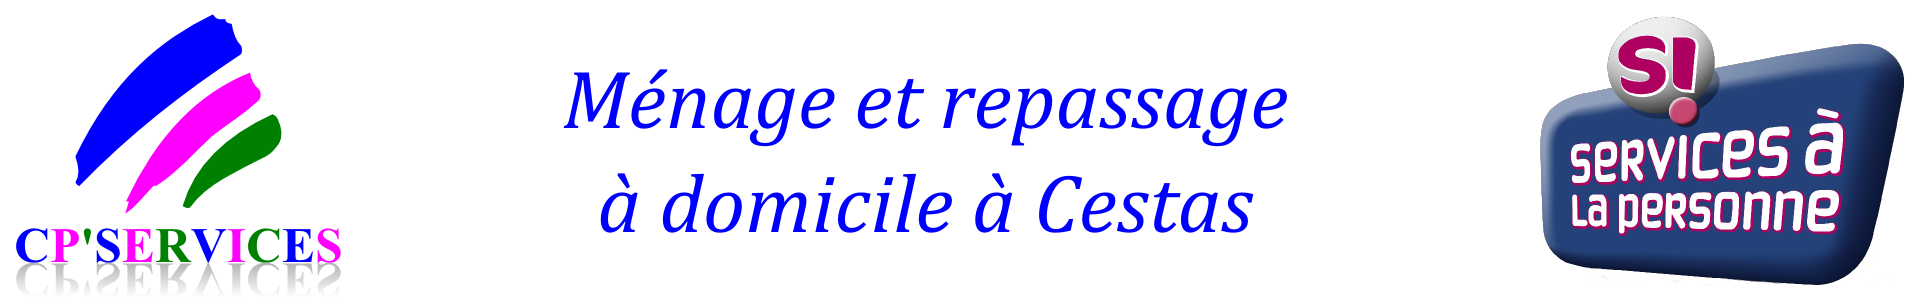 Logo entete cpservices pour site web janvier 2016 v2